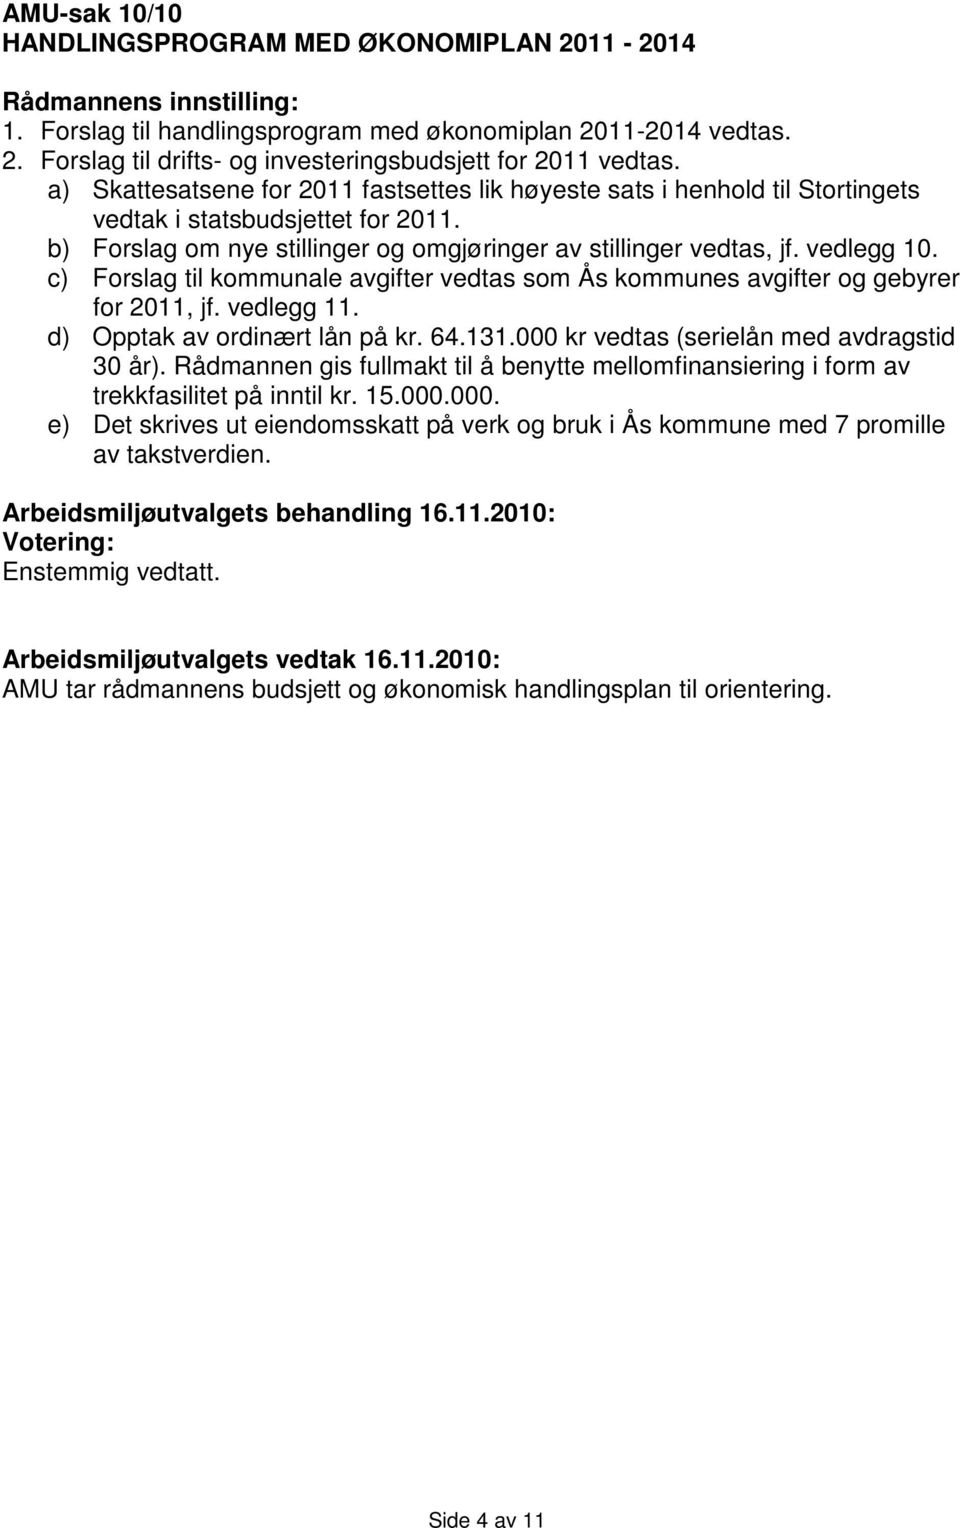 c) Forslag til kommunale avgifter vedtas som Ås kommunes avgifter og gebyrer for 2011, jf. vedlegg 11. d) Opptak av ordinært lån på kr. 64.131.000 kr vedtas (serielån med avdragstid 30 år).